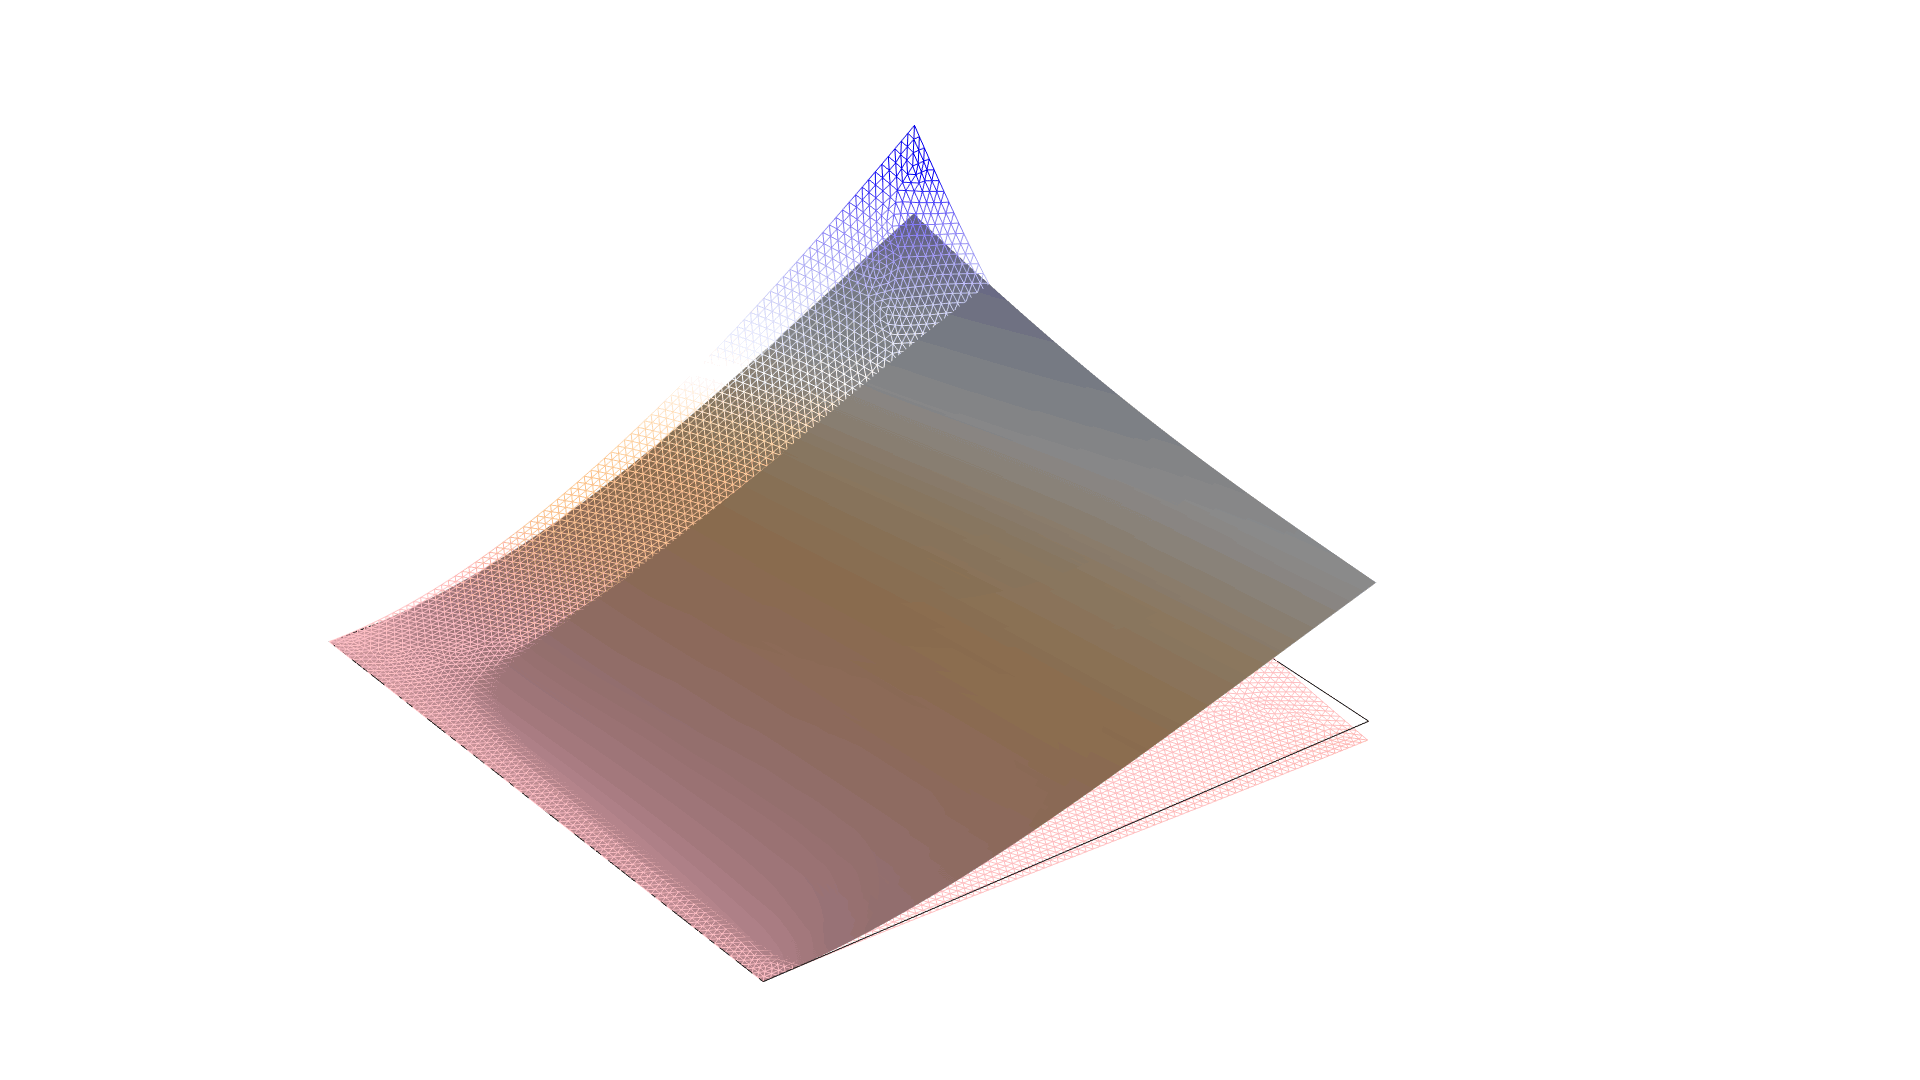 以 Twilight 颜色表显示线框和位移的复合材料模型。